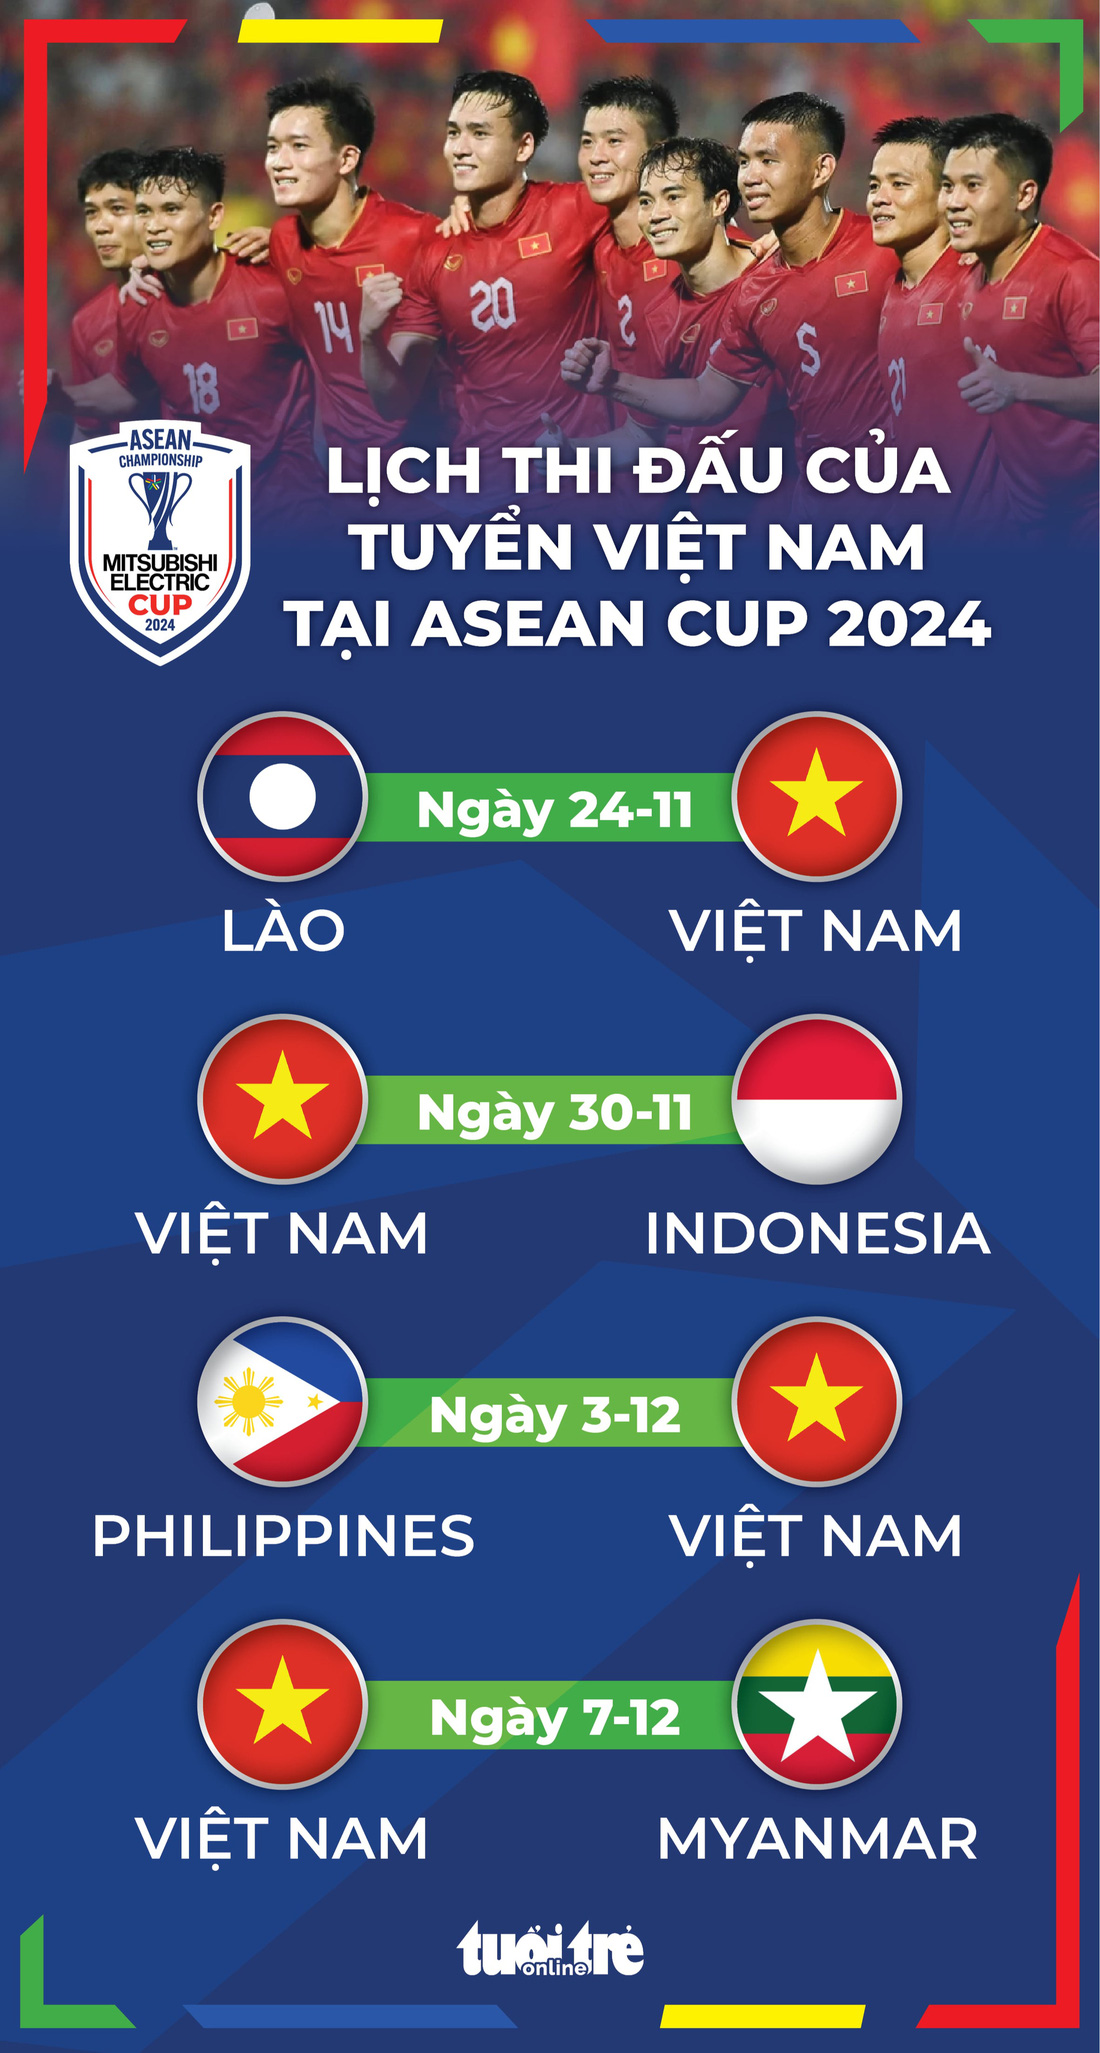 Lịch thi đấu của đội tuyển Việt Nam tại ASEAN Cup 2024